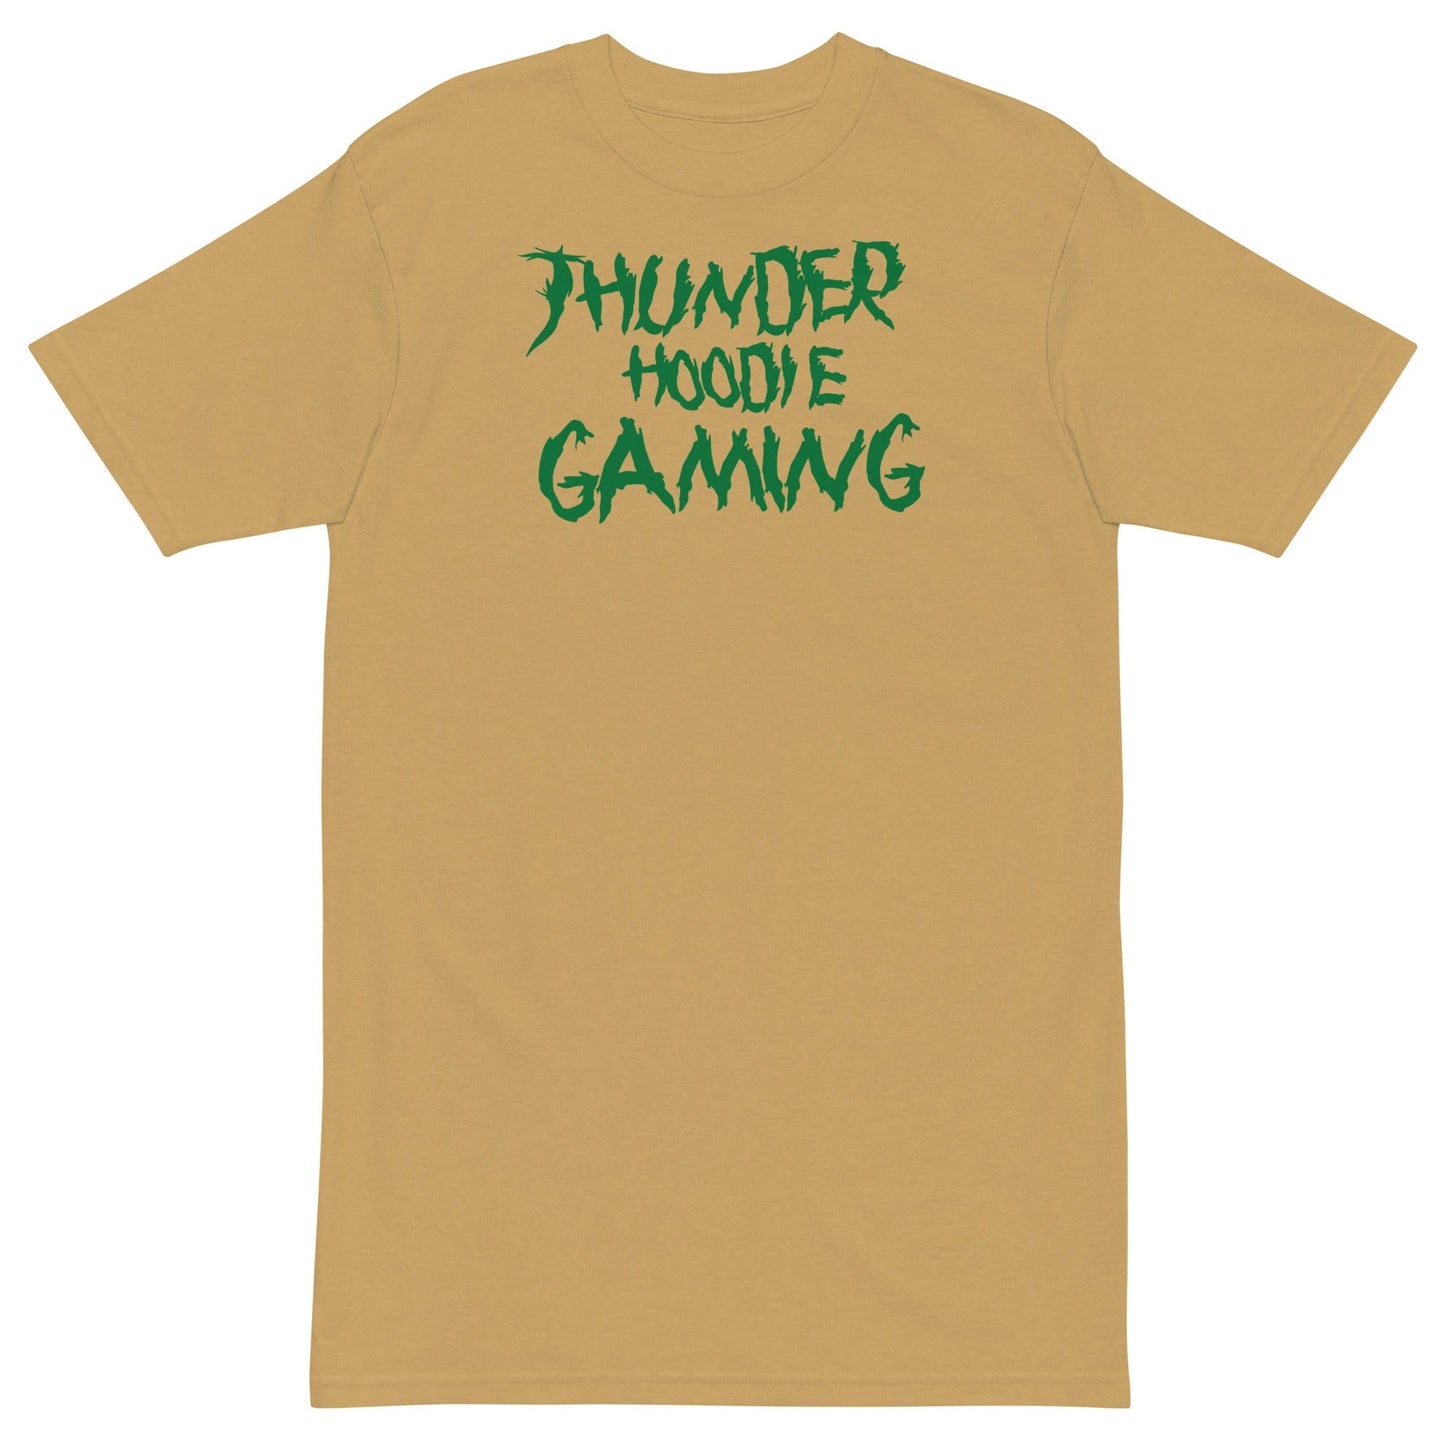 Gaming tshirt